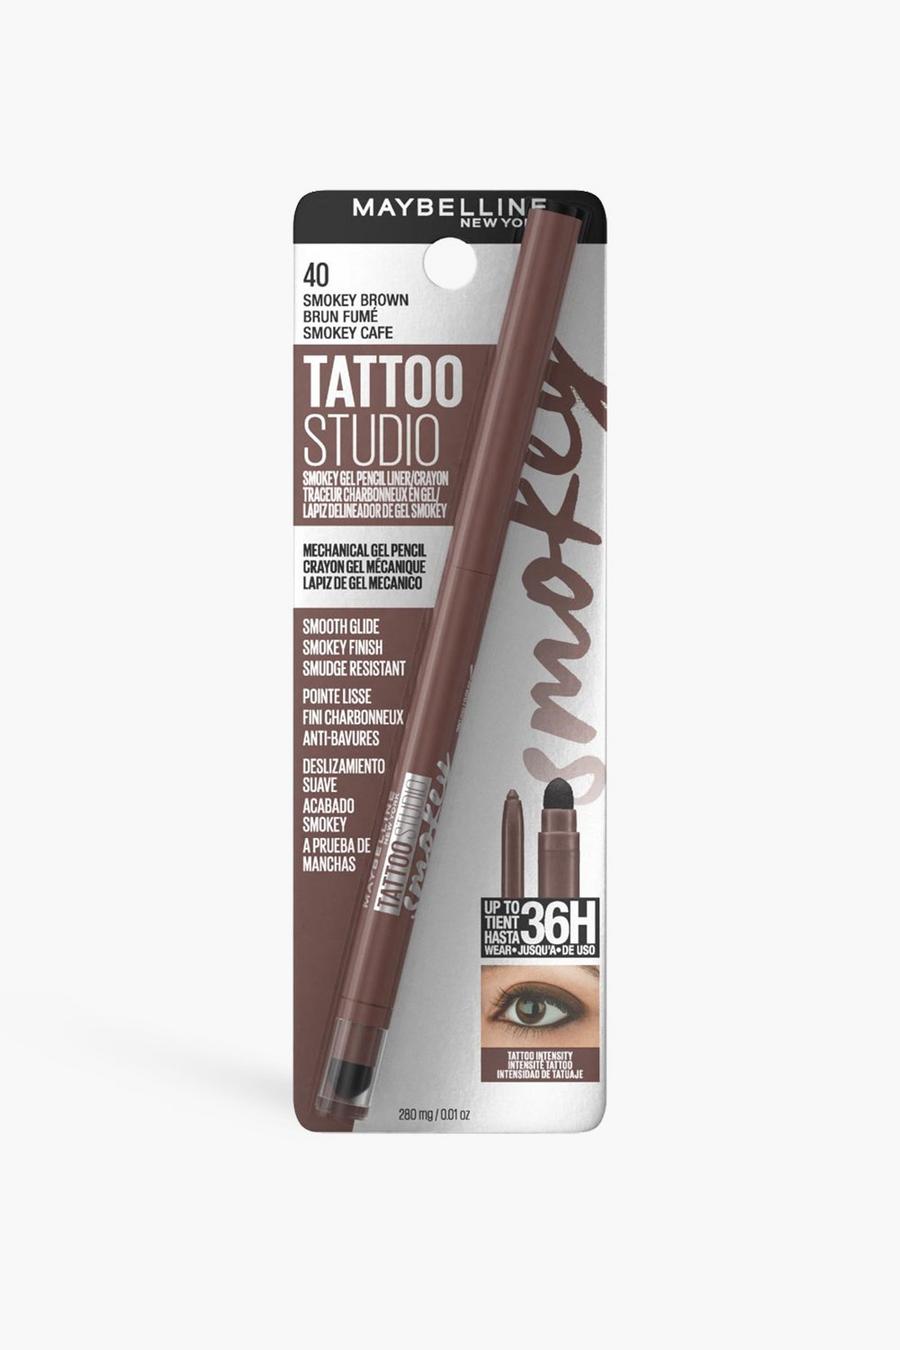 40 smokey brown ג'ל Tattoo ליצירת מראה גבות מעושן של Maybelline – חום